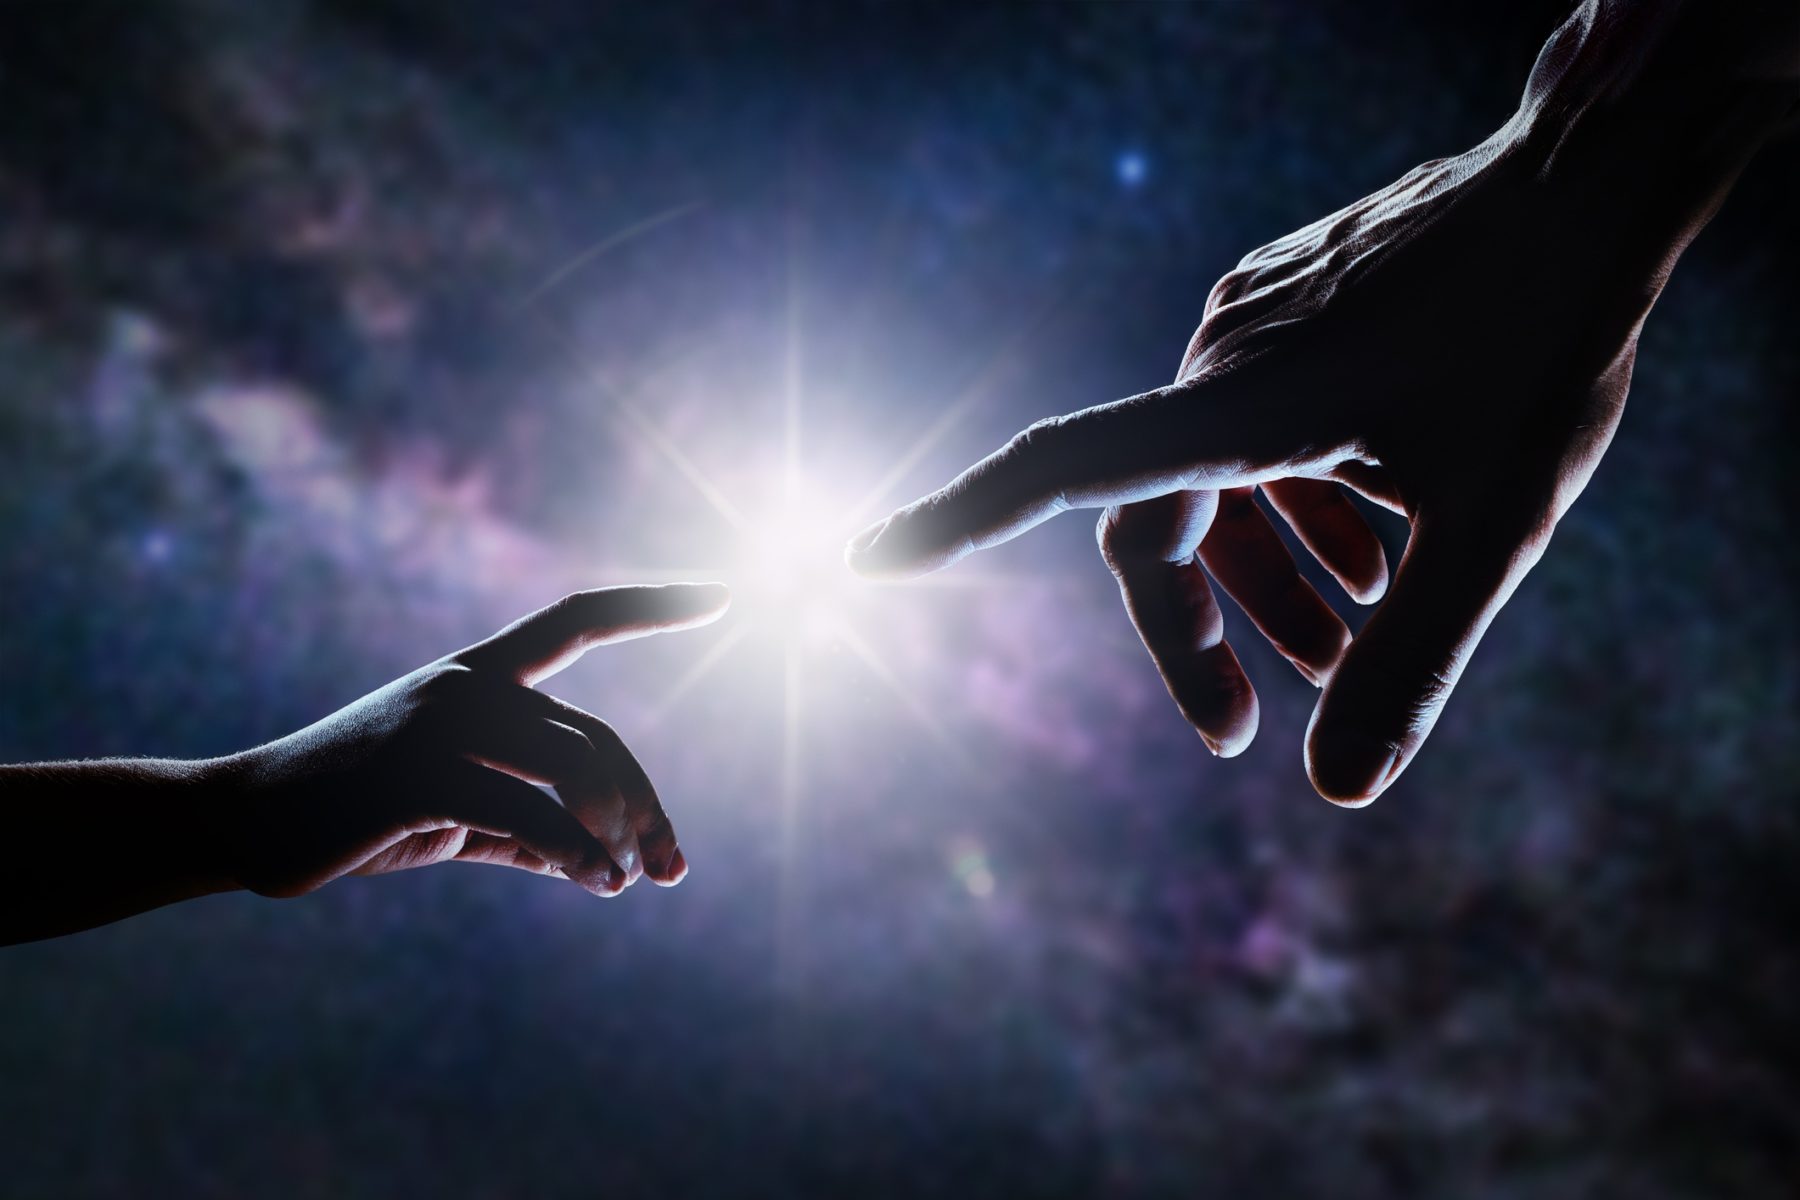 Gros plan de deux mains, adulte et enfant, se rejoignant comme dans la peinture de Michel-Ange devant les étoiles et la galaxie. La lumière brille entre les doigts du père et du fils.